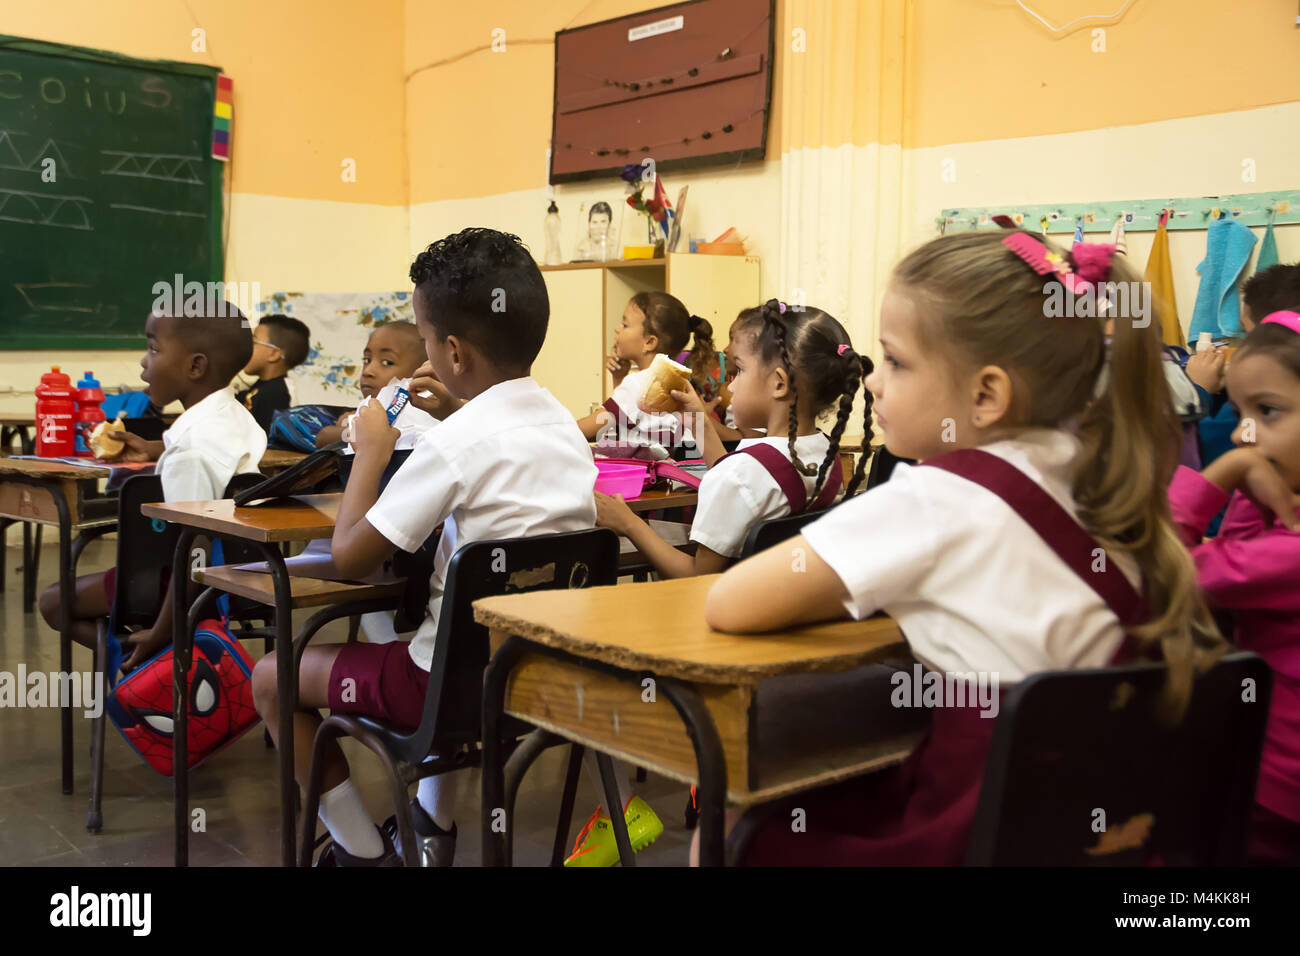 L'Avana, Cuba - 3 Dicembre 2017: scuola elementare nella classe Carlos Paneque scuola di Havana con i bambini durante la ricreazione Foto Stock